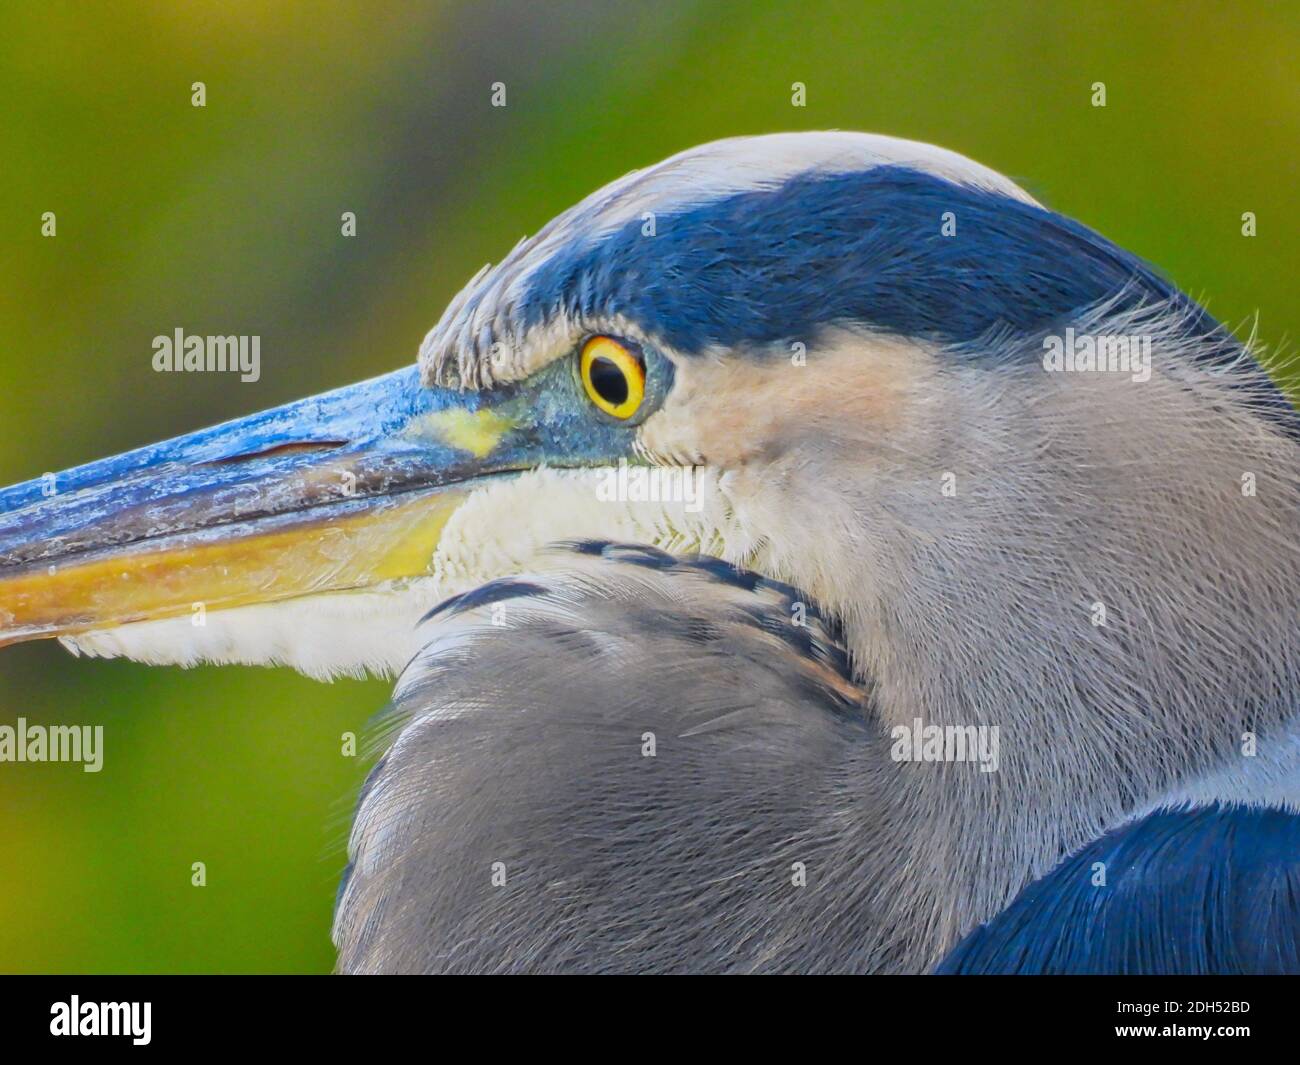 Closeup grande airone blu: Fauna selvatica autunno con vista closeup di un grande uccello airone blu con piume blu, becco giallo e occhi gialli con colore autunno Foto Stock